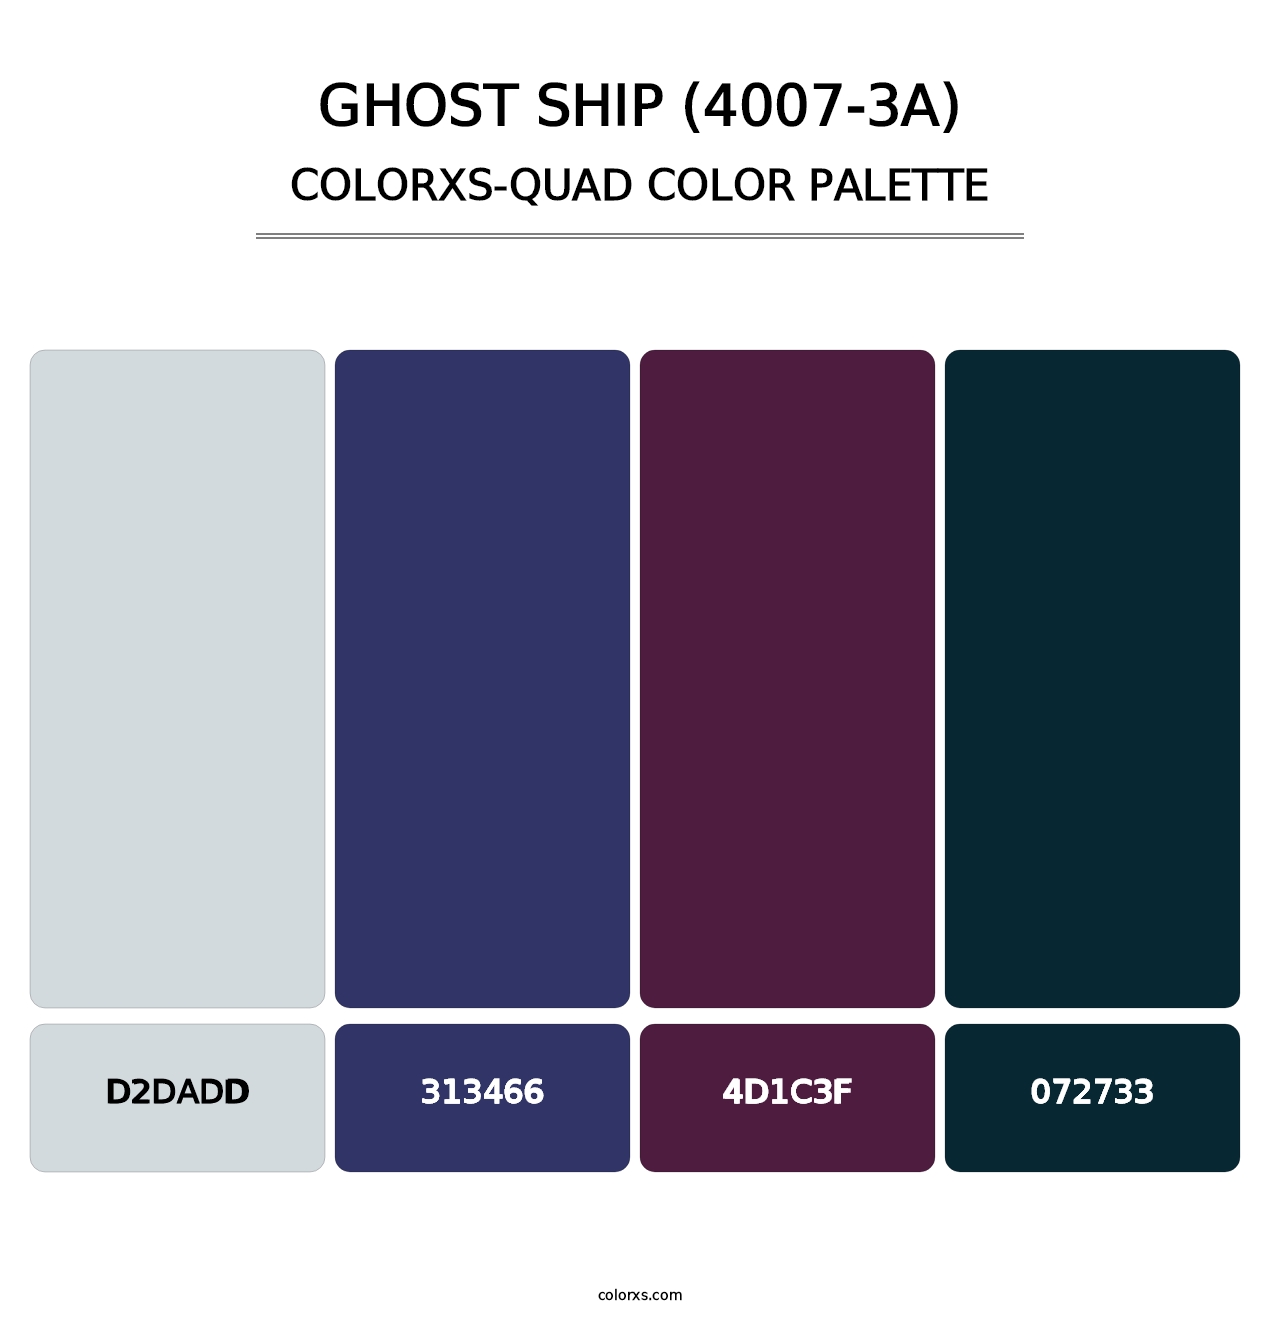 Ghost Ship (4007-3A) - Colorxs Quad Palette